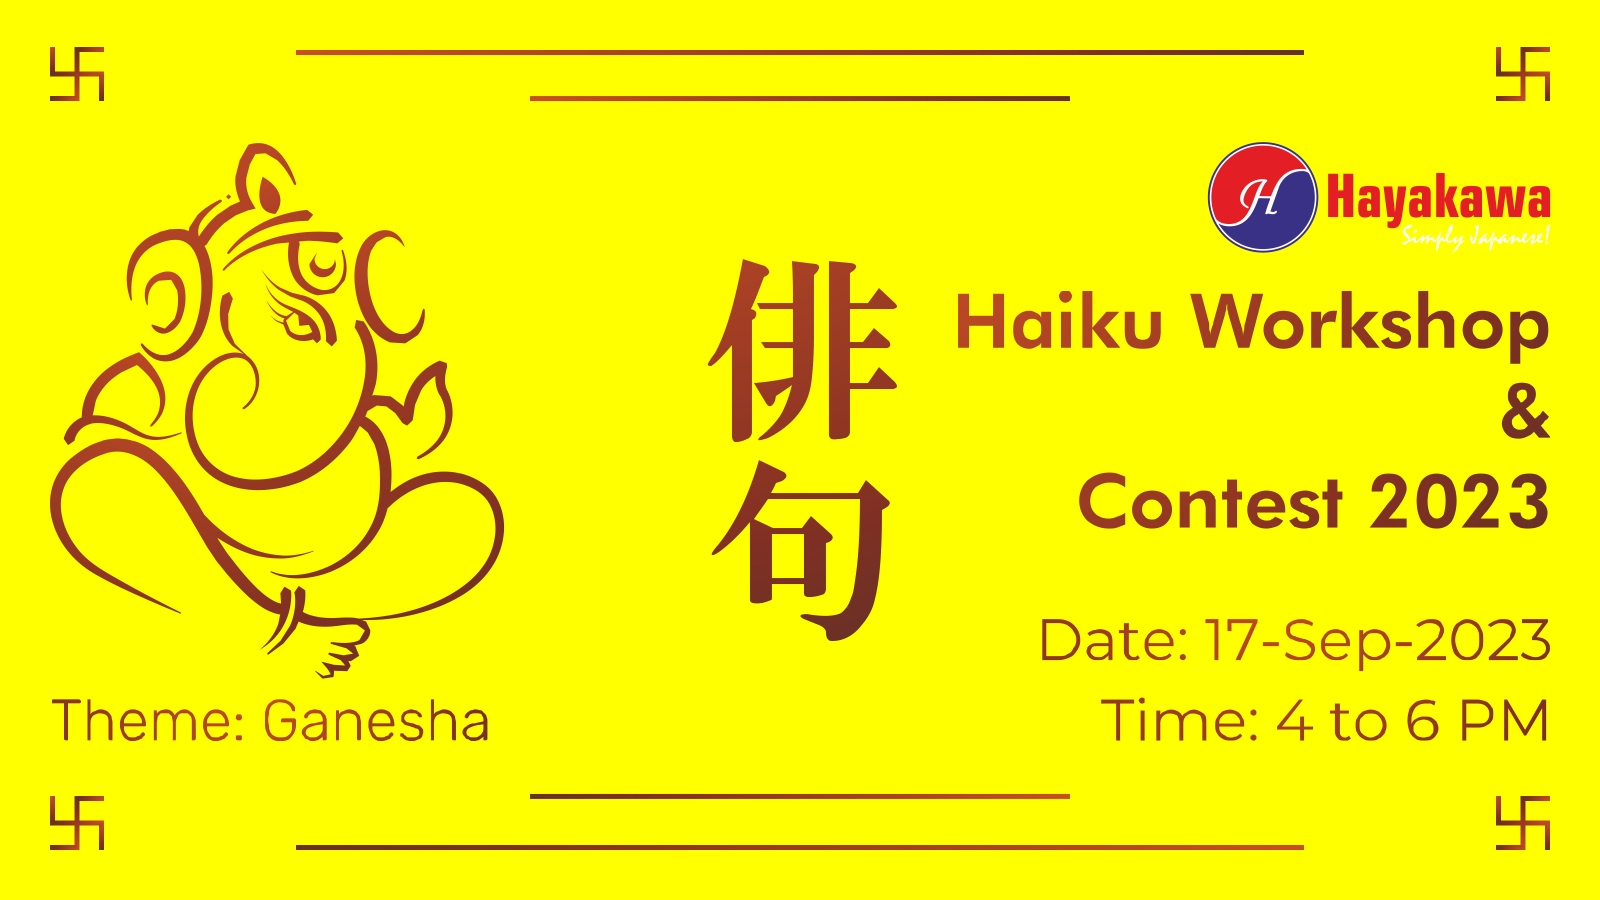 Hayakawa Haiku Workshop & Contest 2023